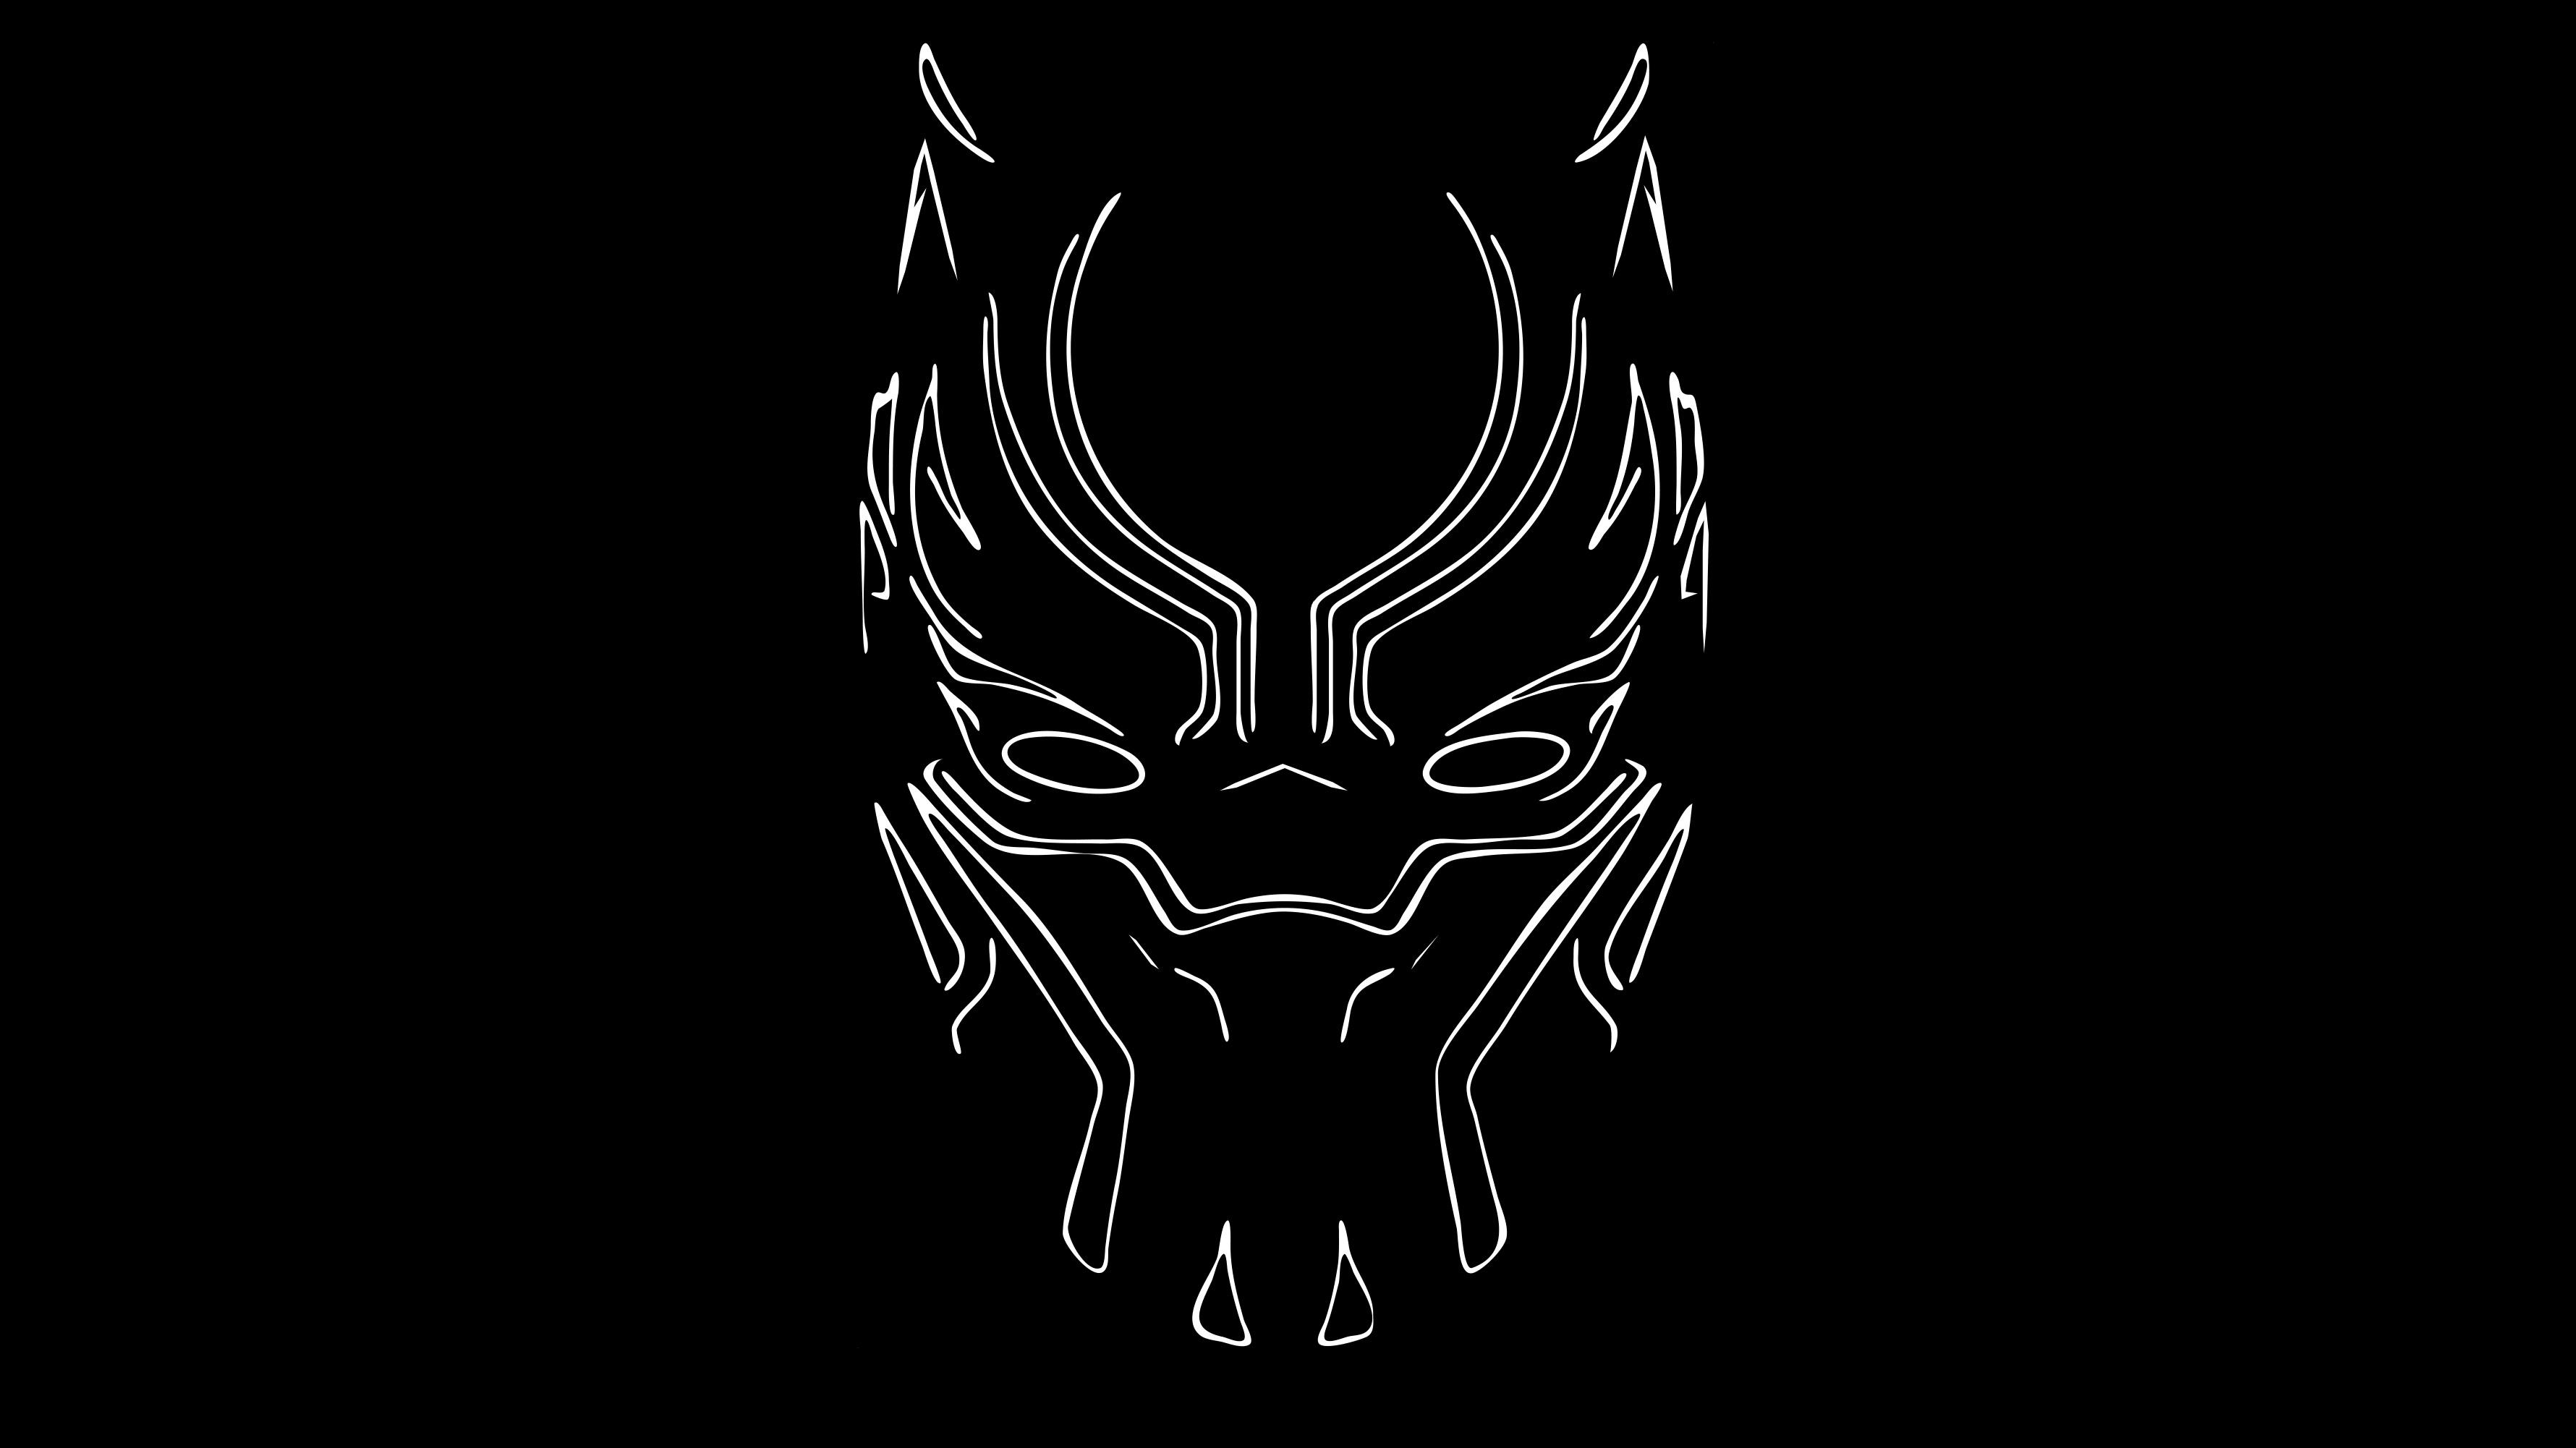 Black Panther 4k Artwork, HD Movies, 4k Wallpaper, Image